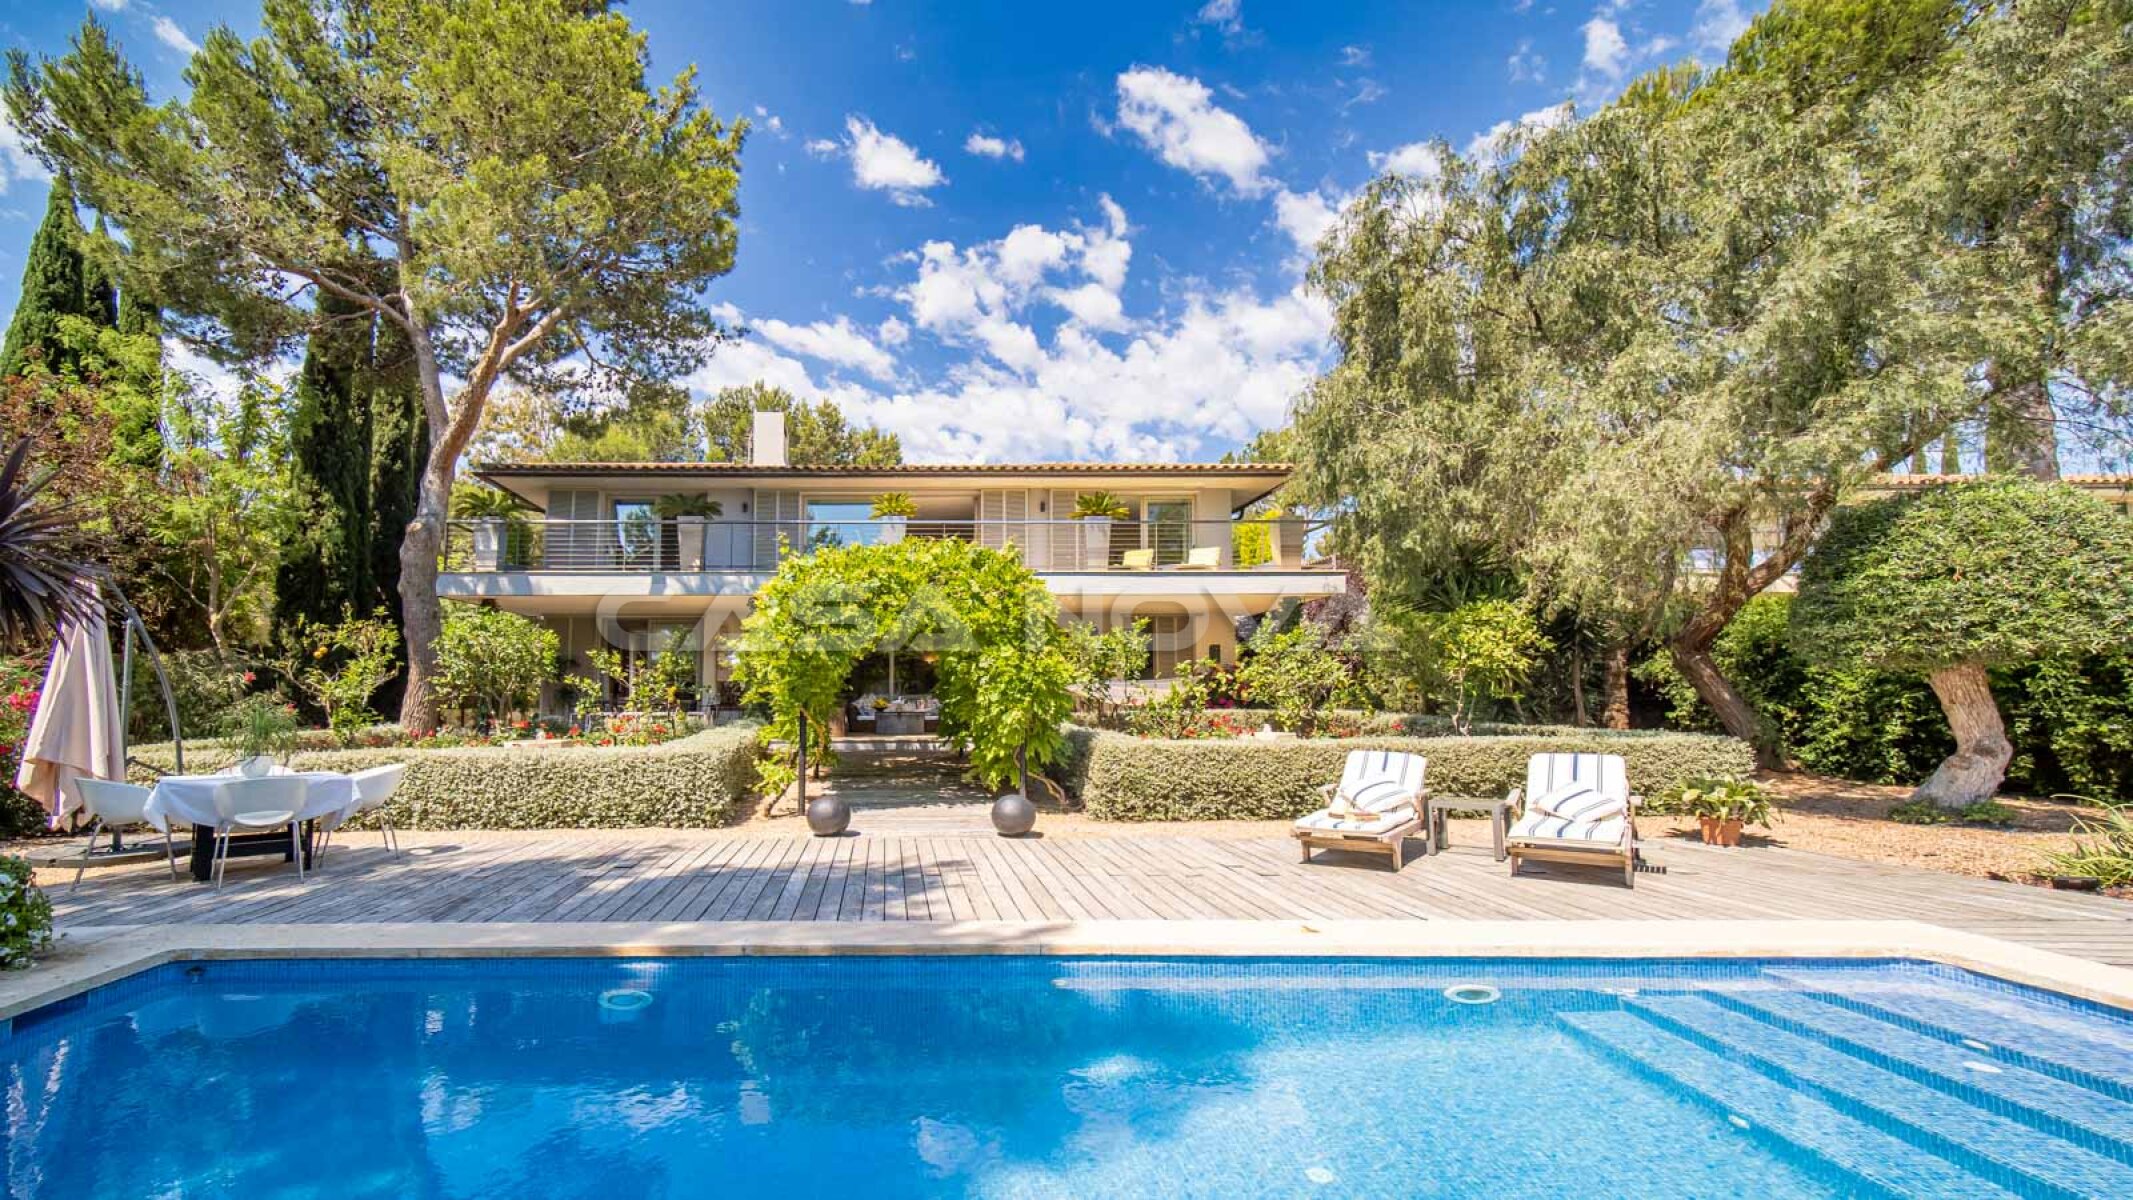 Id�lica villa en Mallorca con piscina